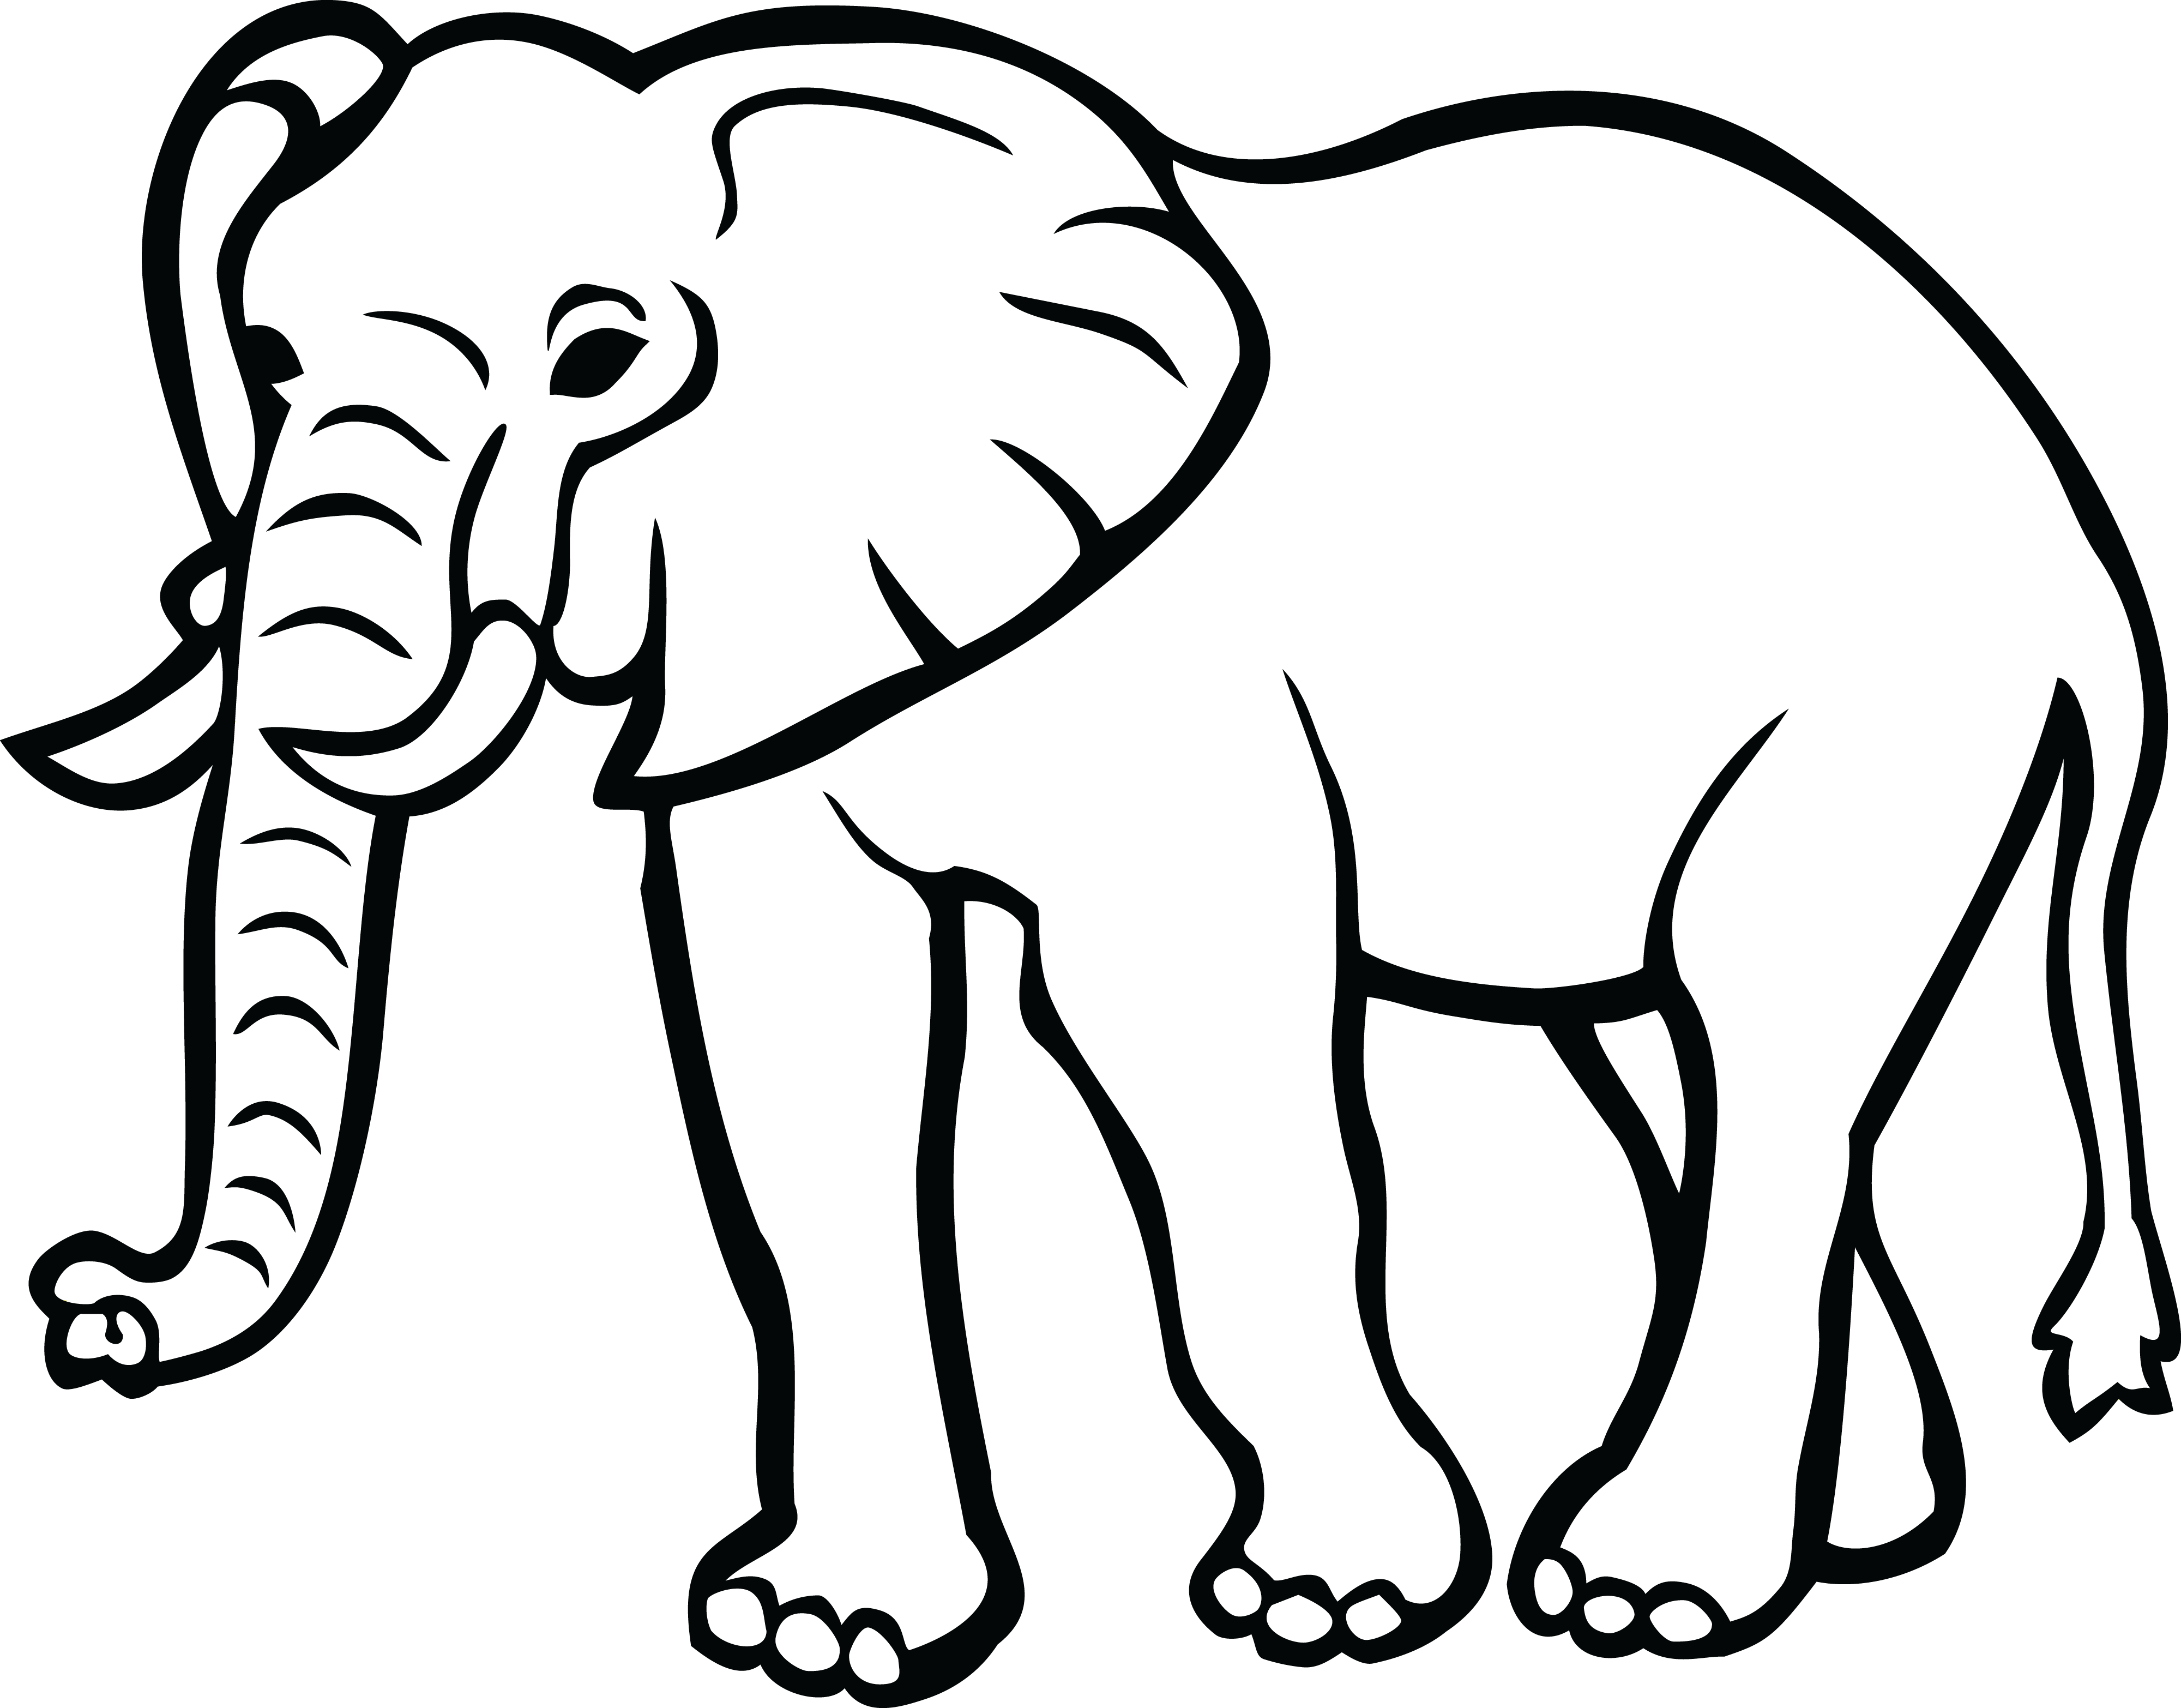 Elephant Black and White Logo - Elephants Clipart 15 Elephant Black And White For Free Download On